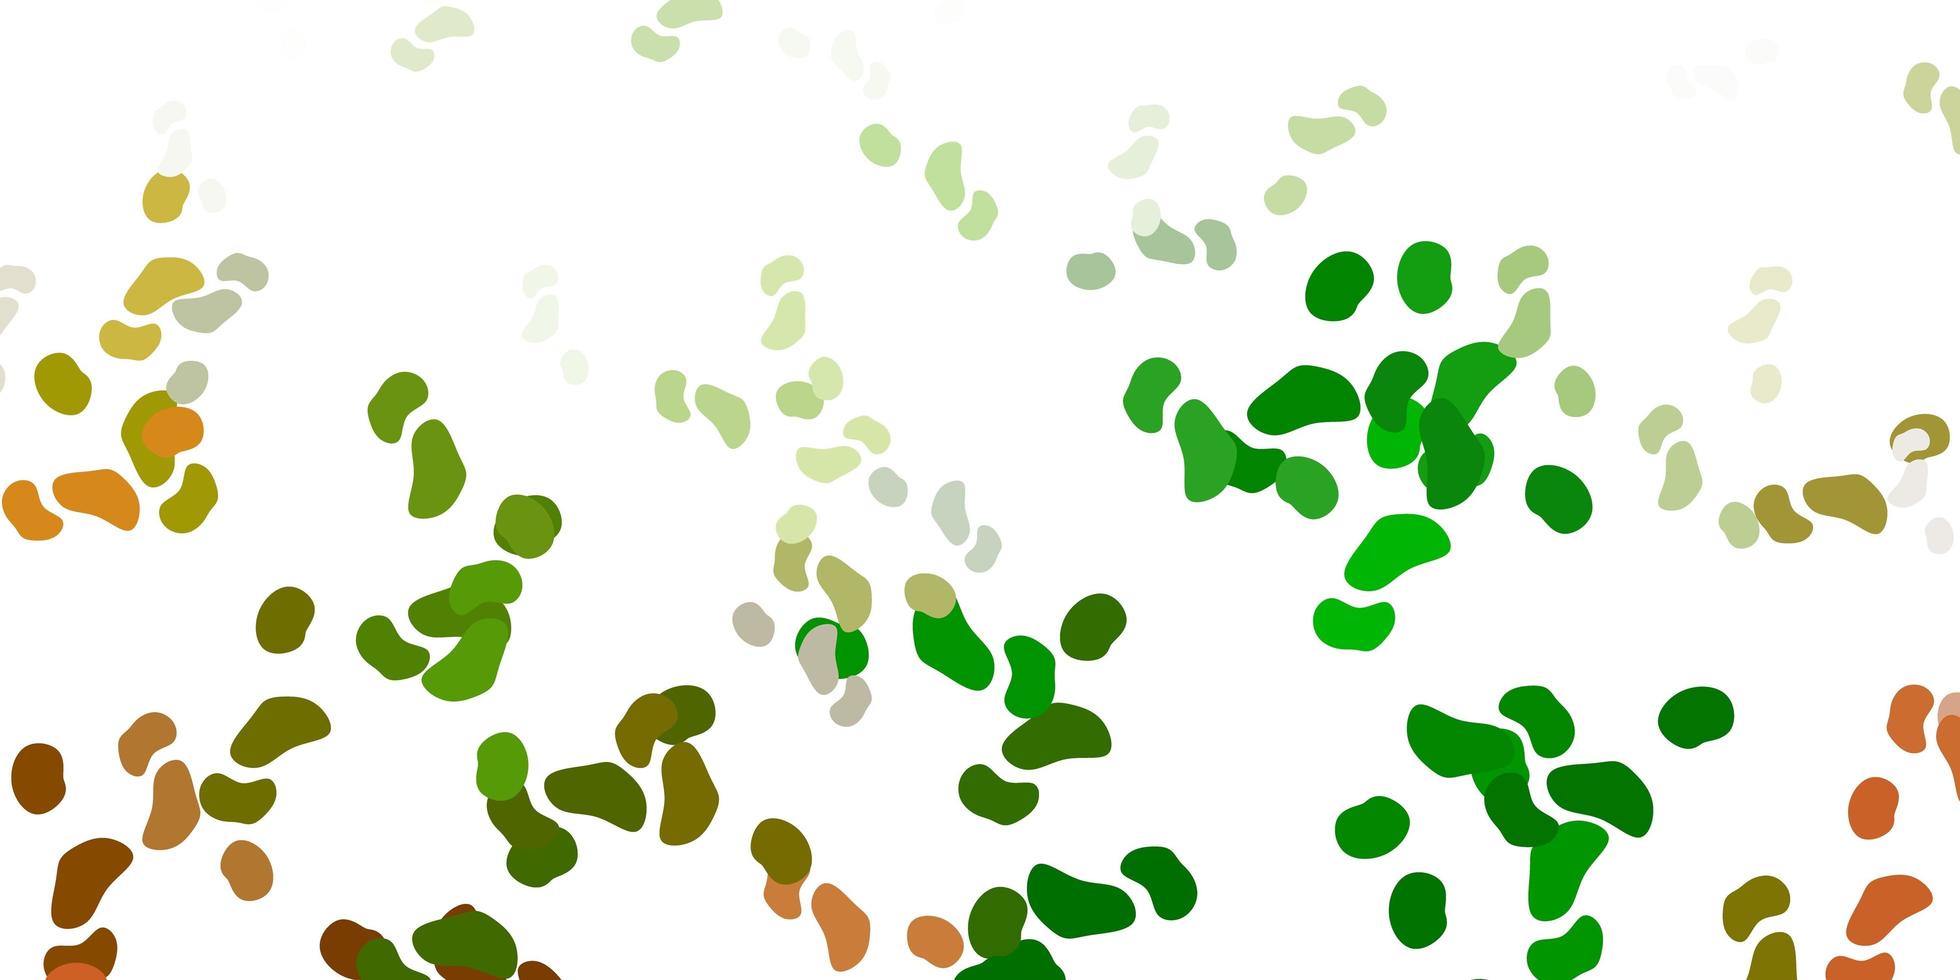 texture de vecteur vert clair, jaune avec des formes de memphis.